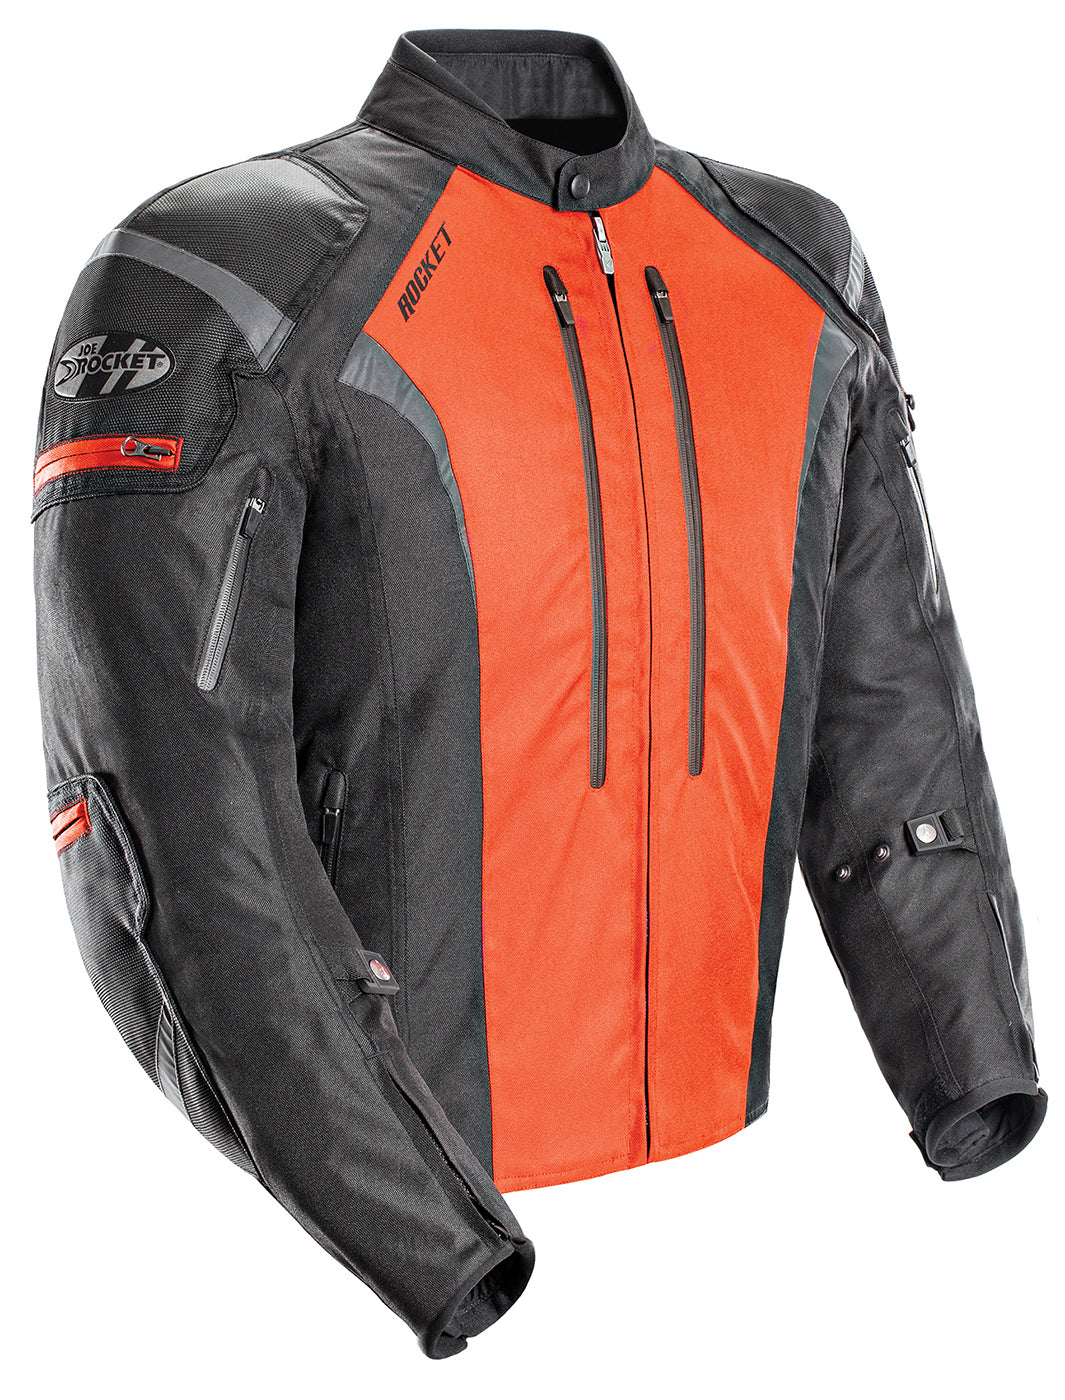 Joe Rocket Atomic 5.0 Textile Jacket - Black/Orange